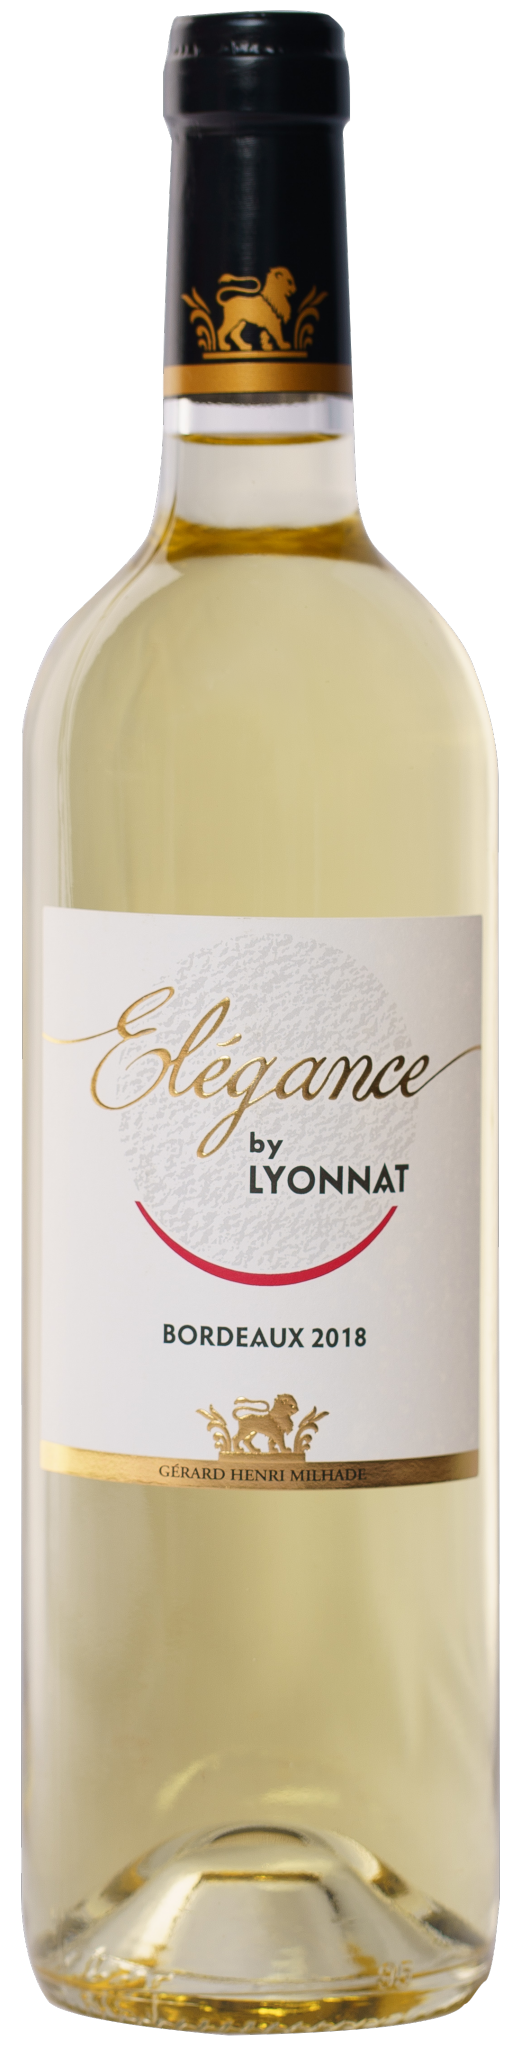 Les autres produits de la gamme Lyonnat, Elegance by Lyonnat, AOP Bordeaux, Blanc, 2018